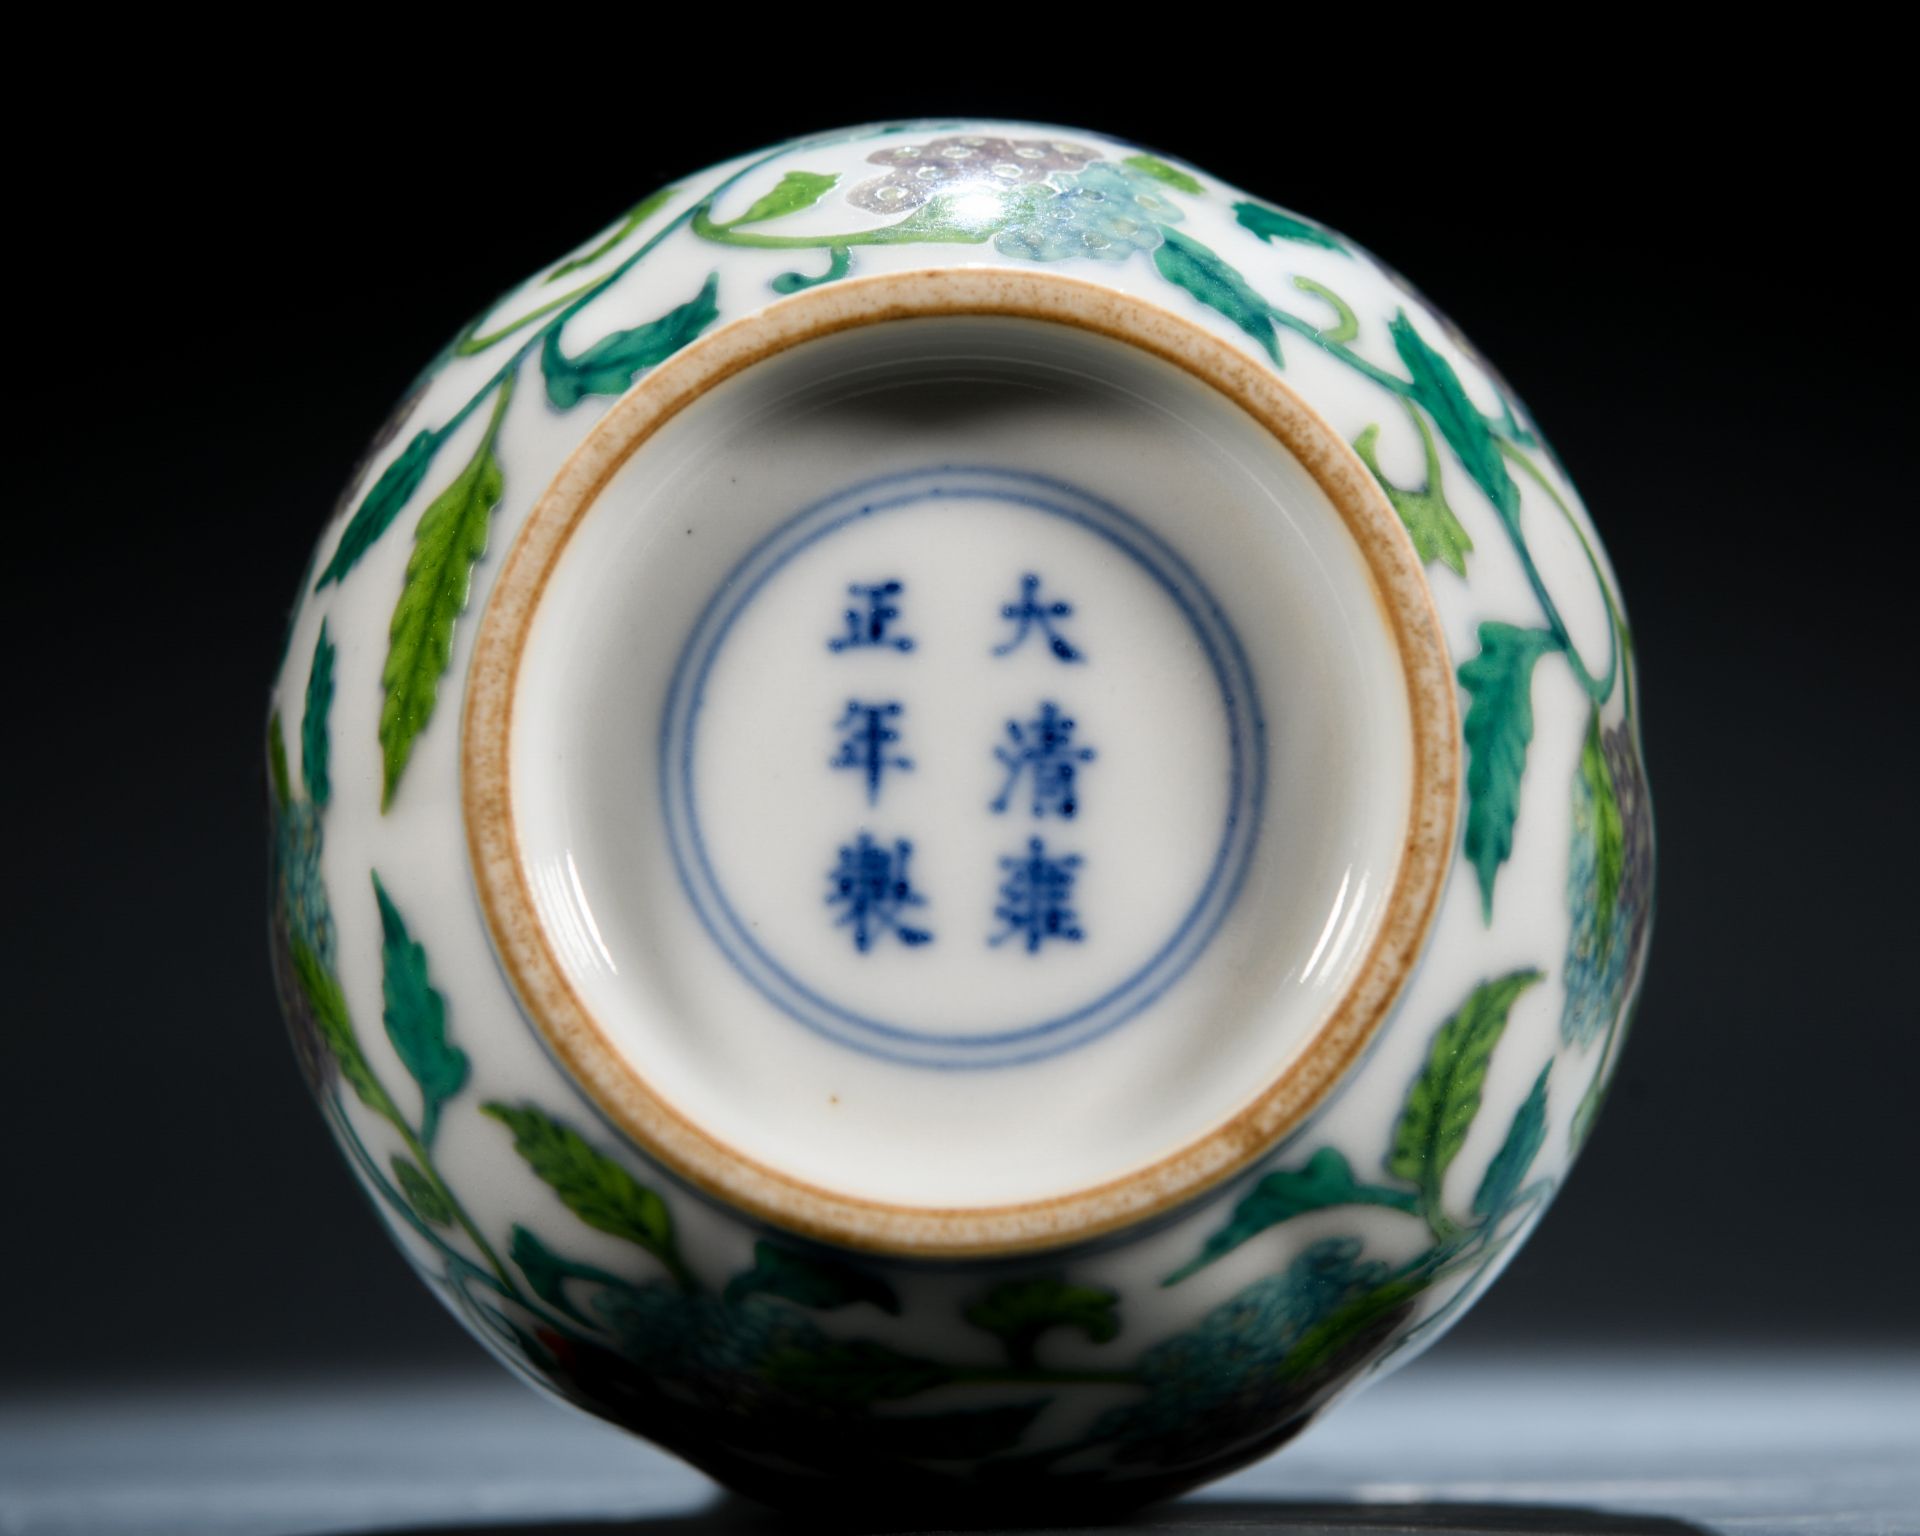 A Chinese Doucai Glaze Dragon Bottle Vase - Image 8 of 8